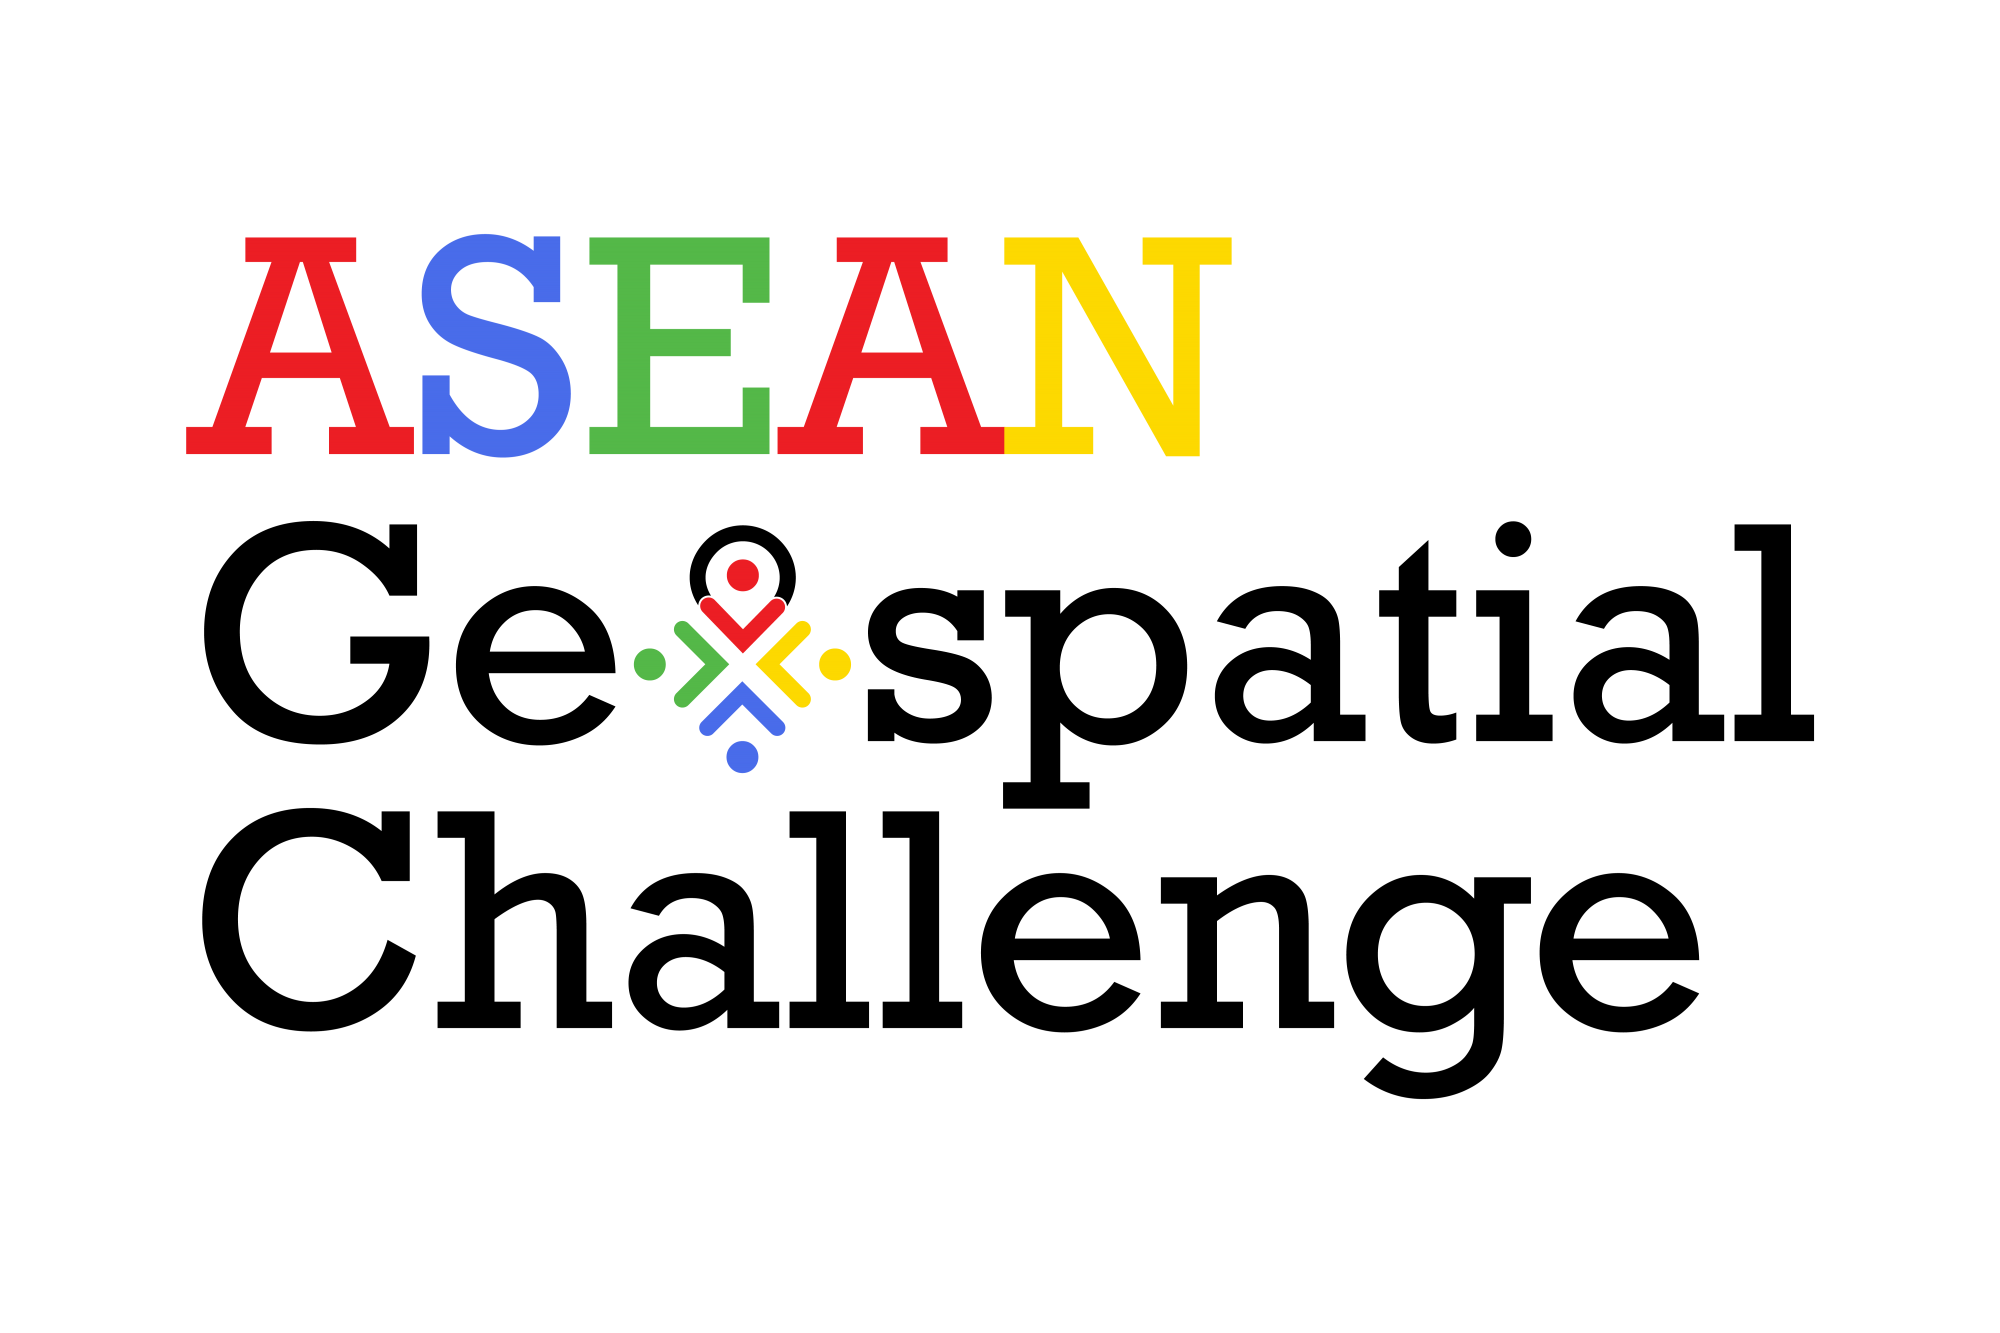 ASEAN Geospatial Challenge 2021 Winners